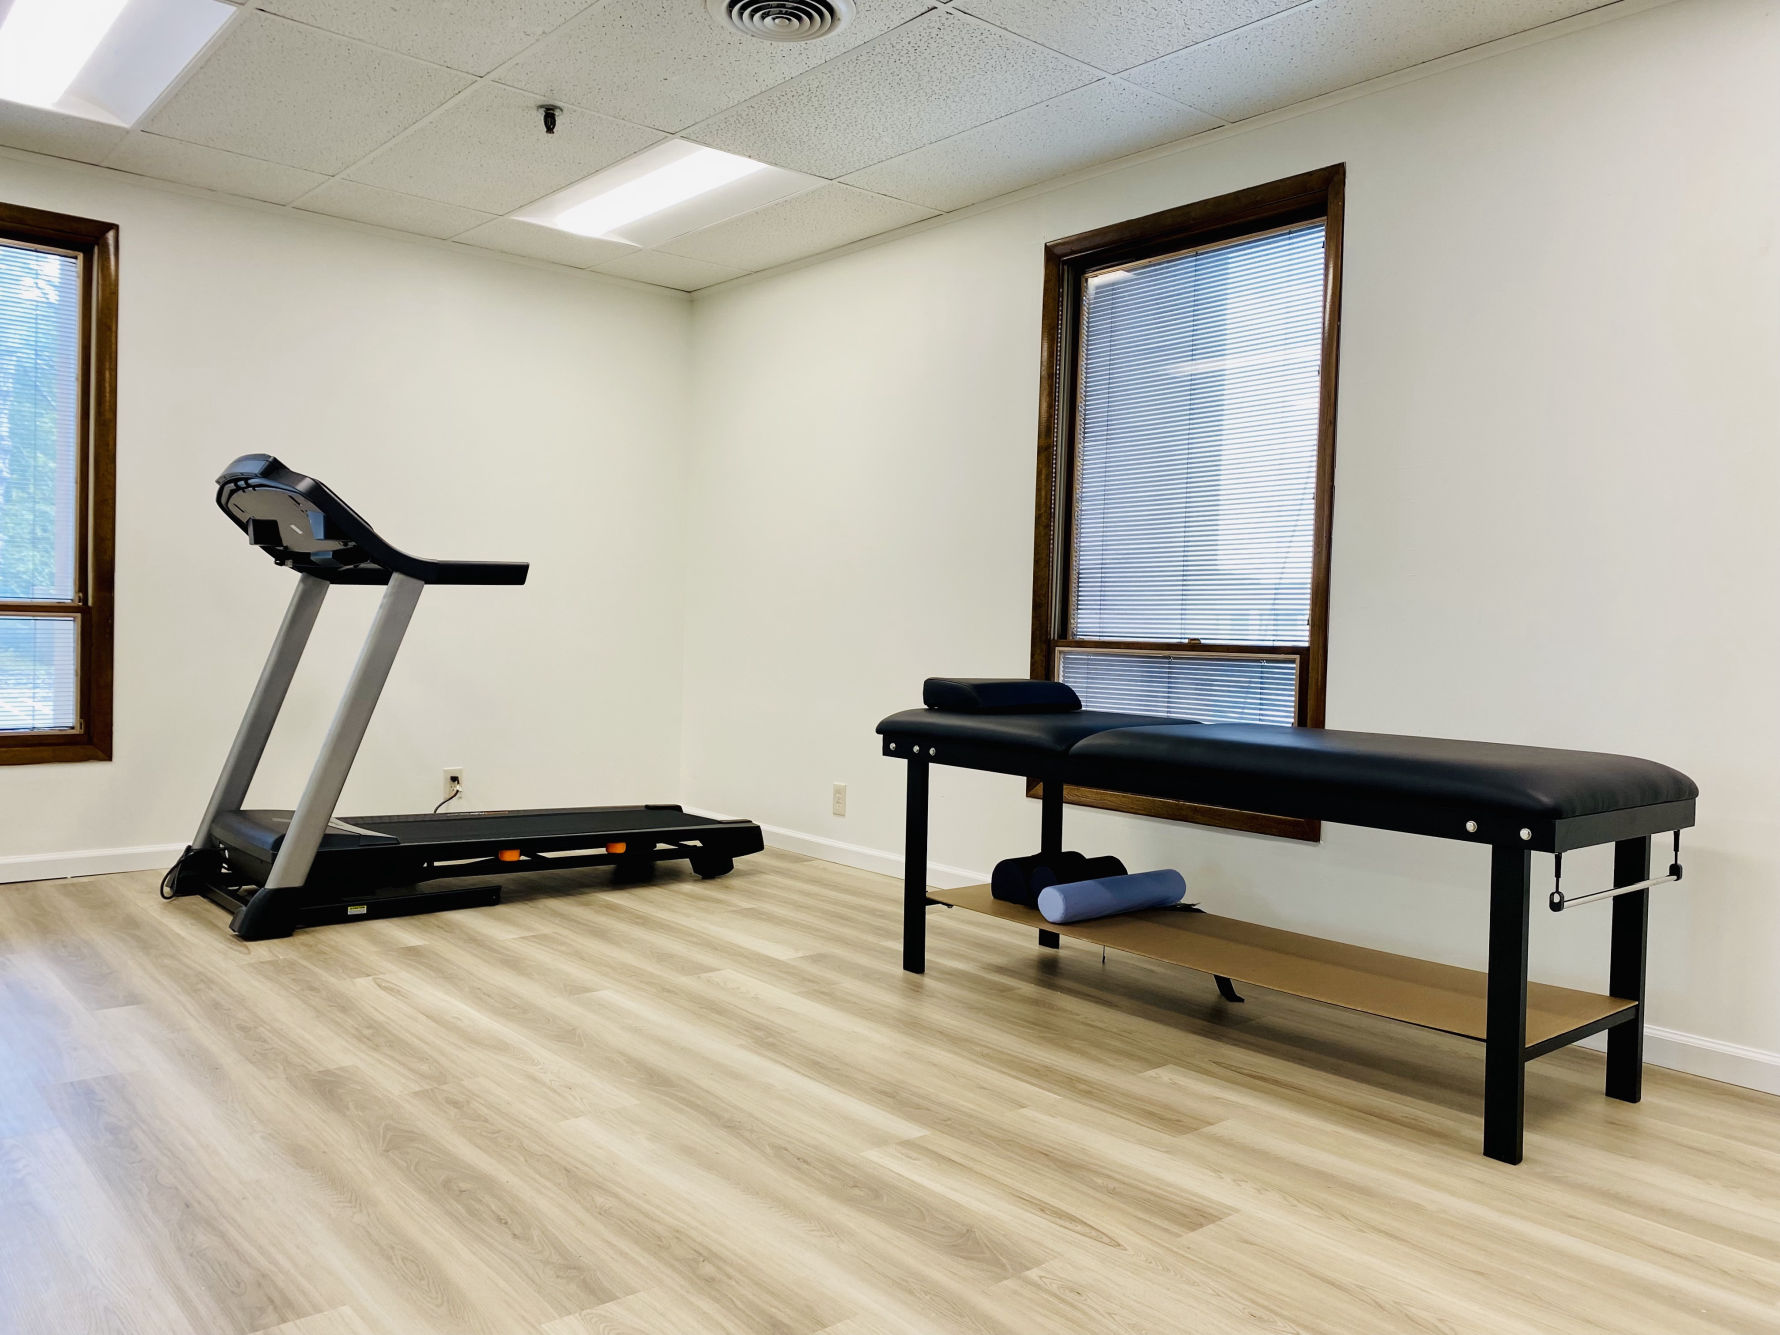 Treadmill and Examination Table